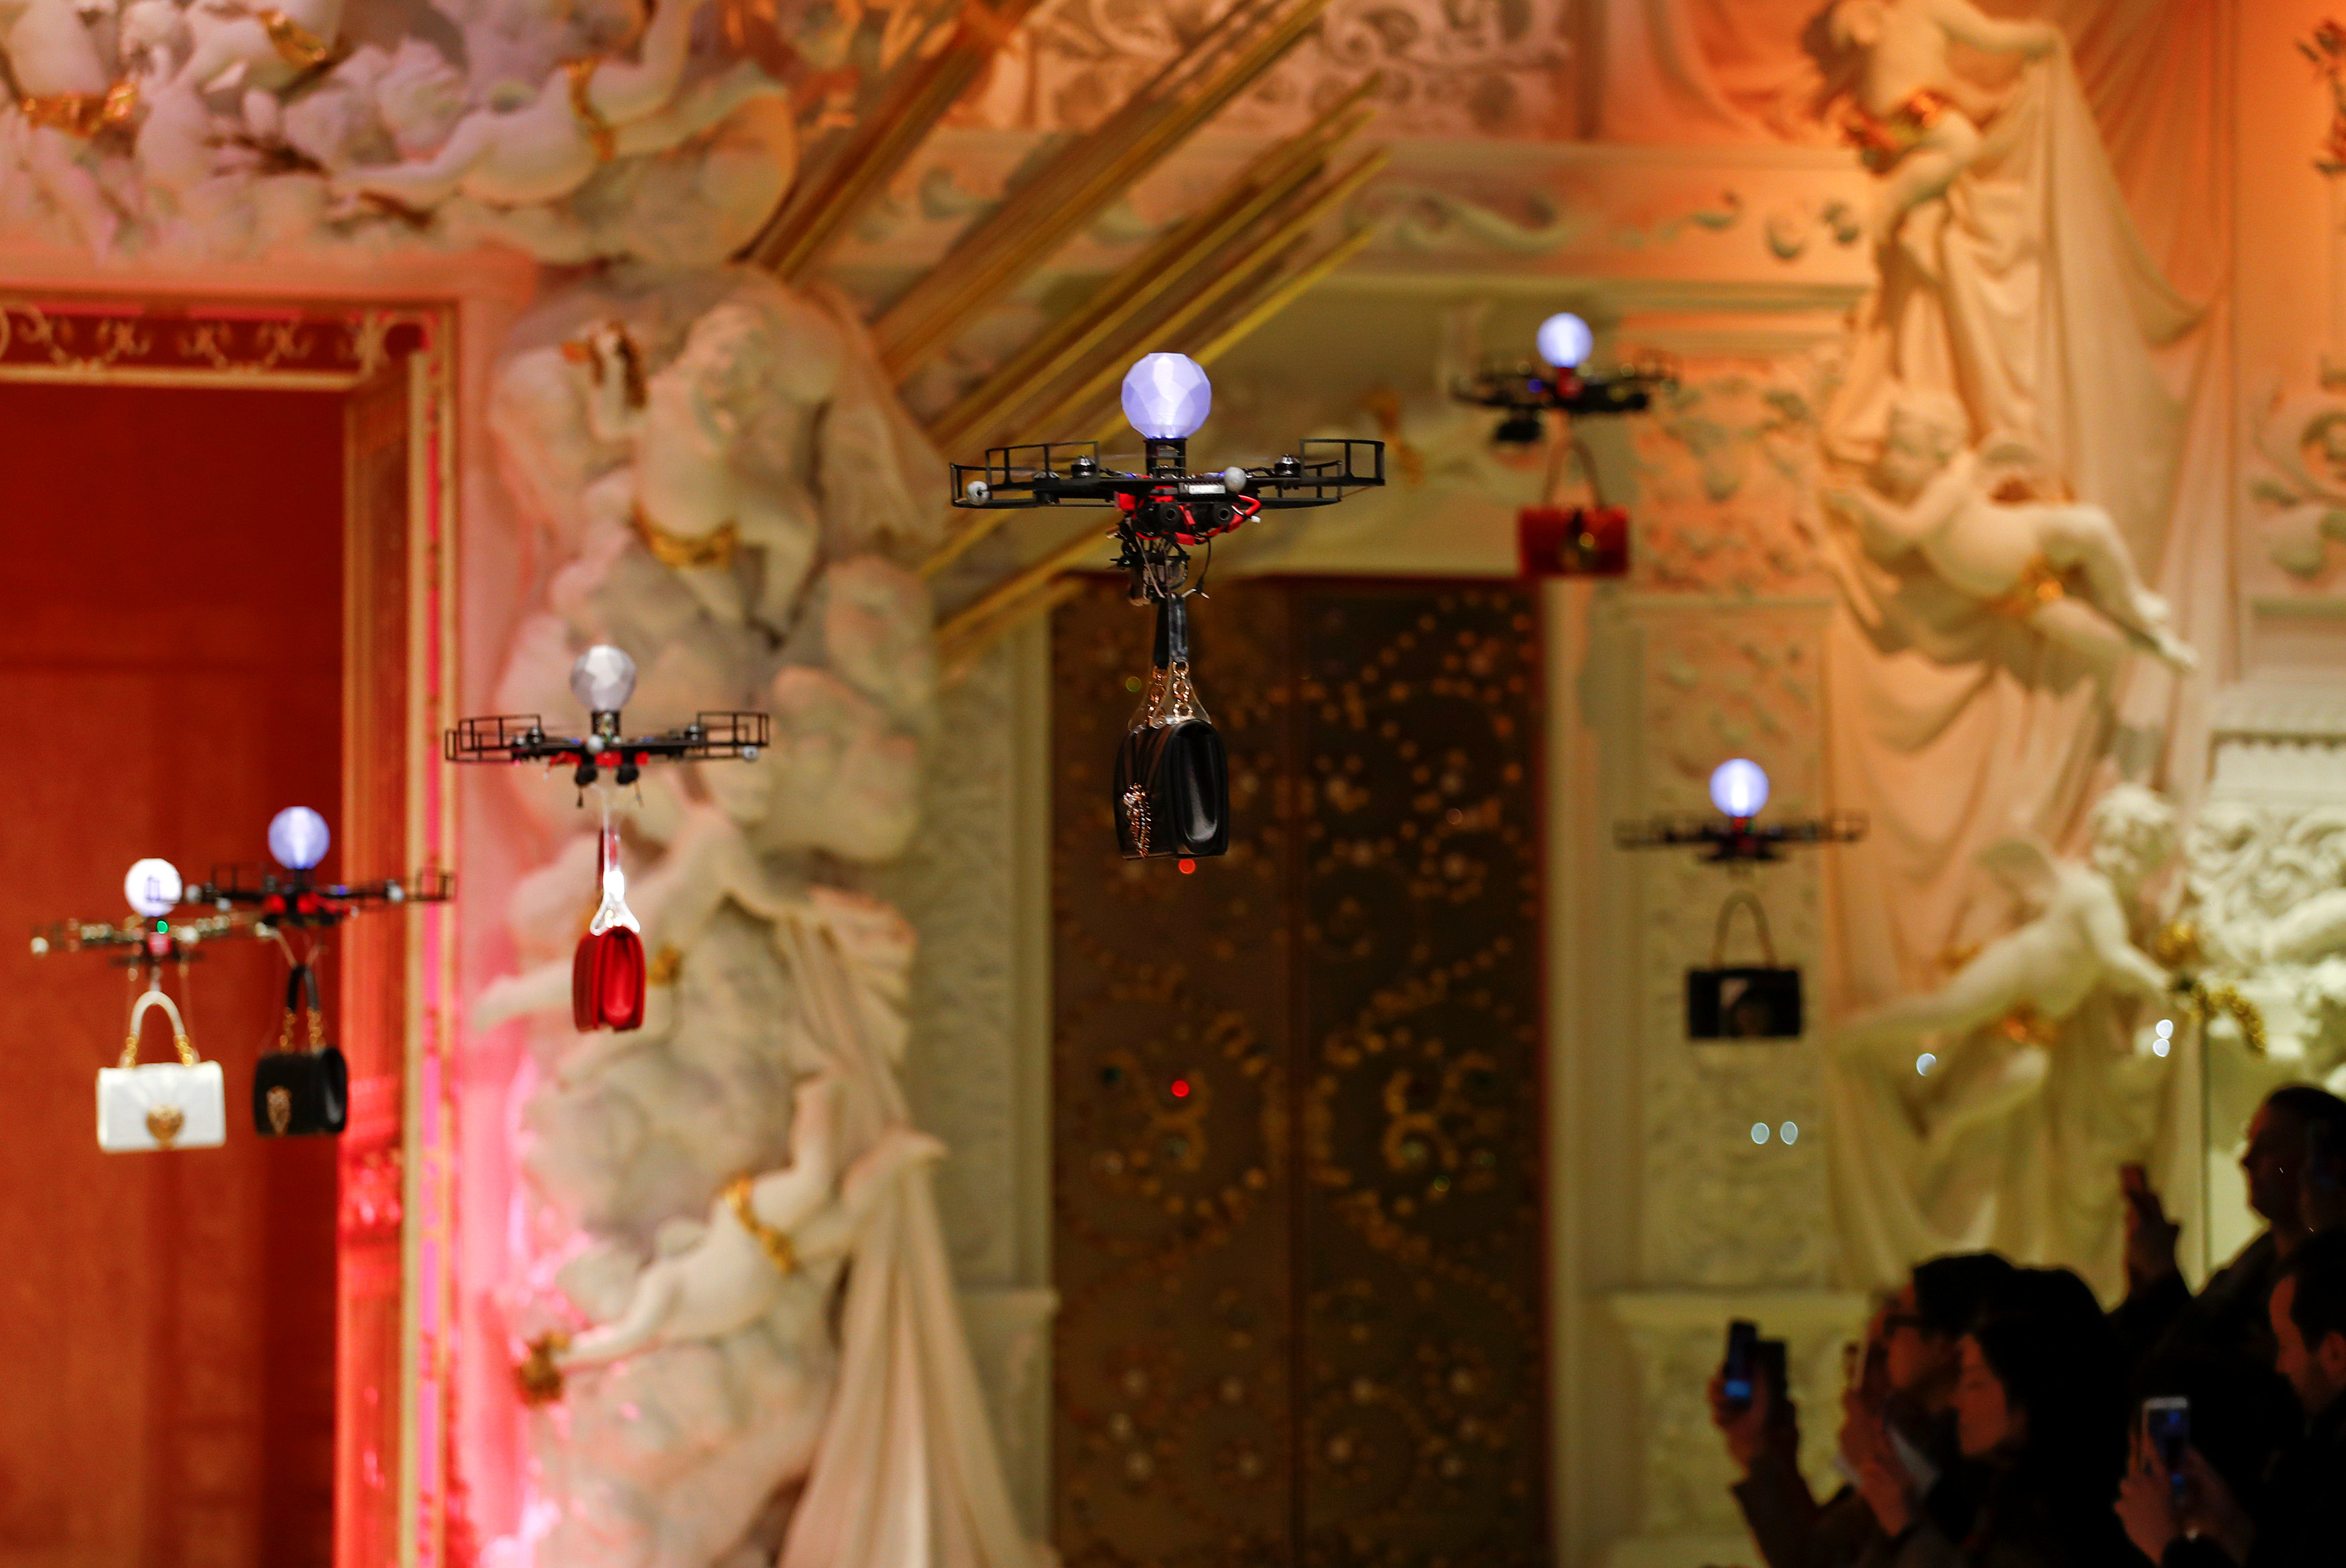 Οι Dolce & Gabbana «κατέβασαν» τα drones στην πασαρέλα